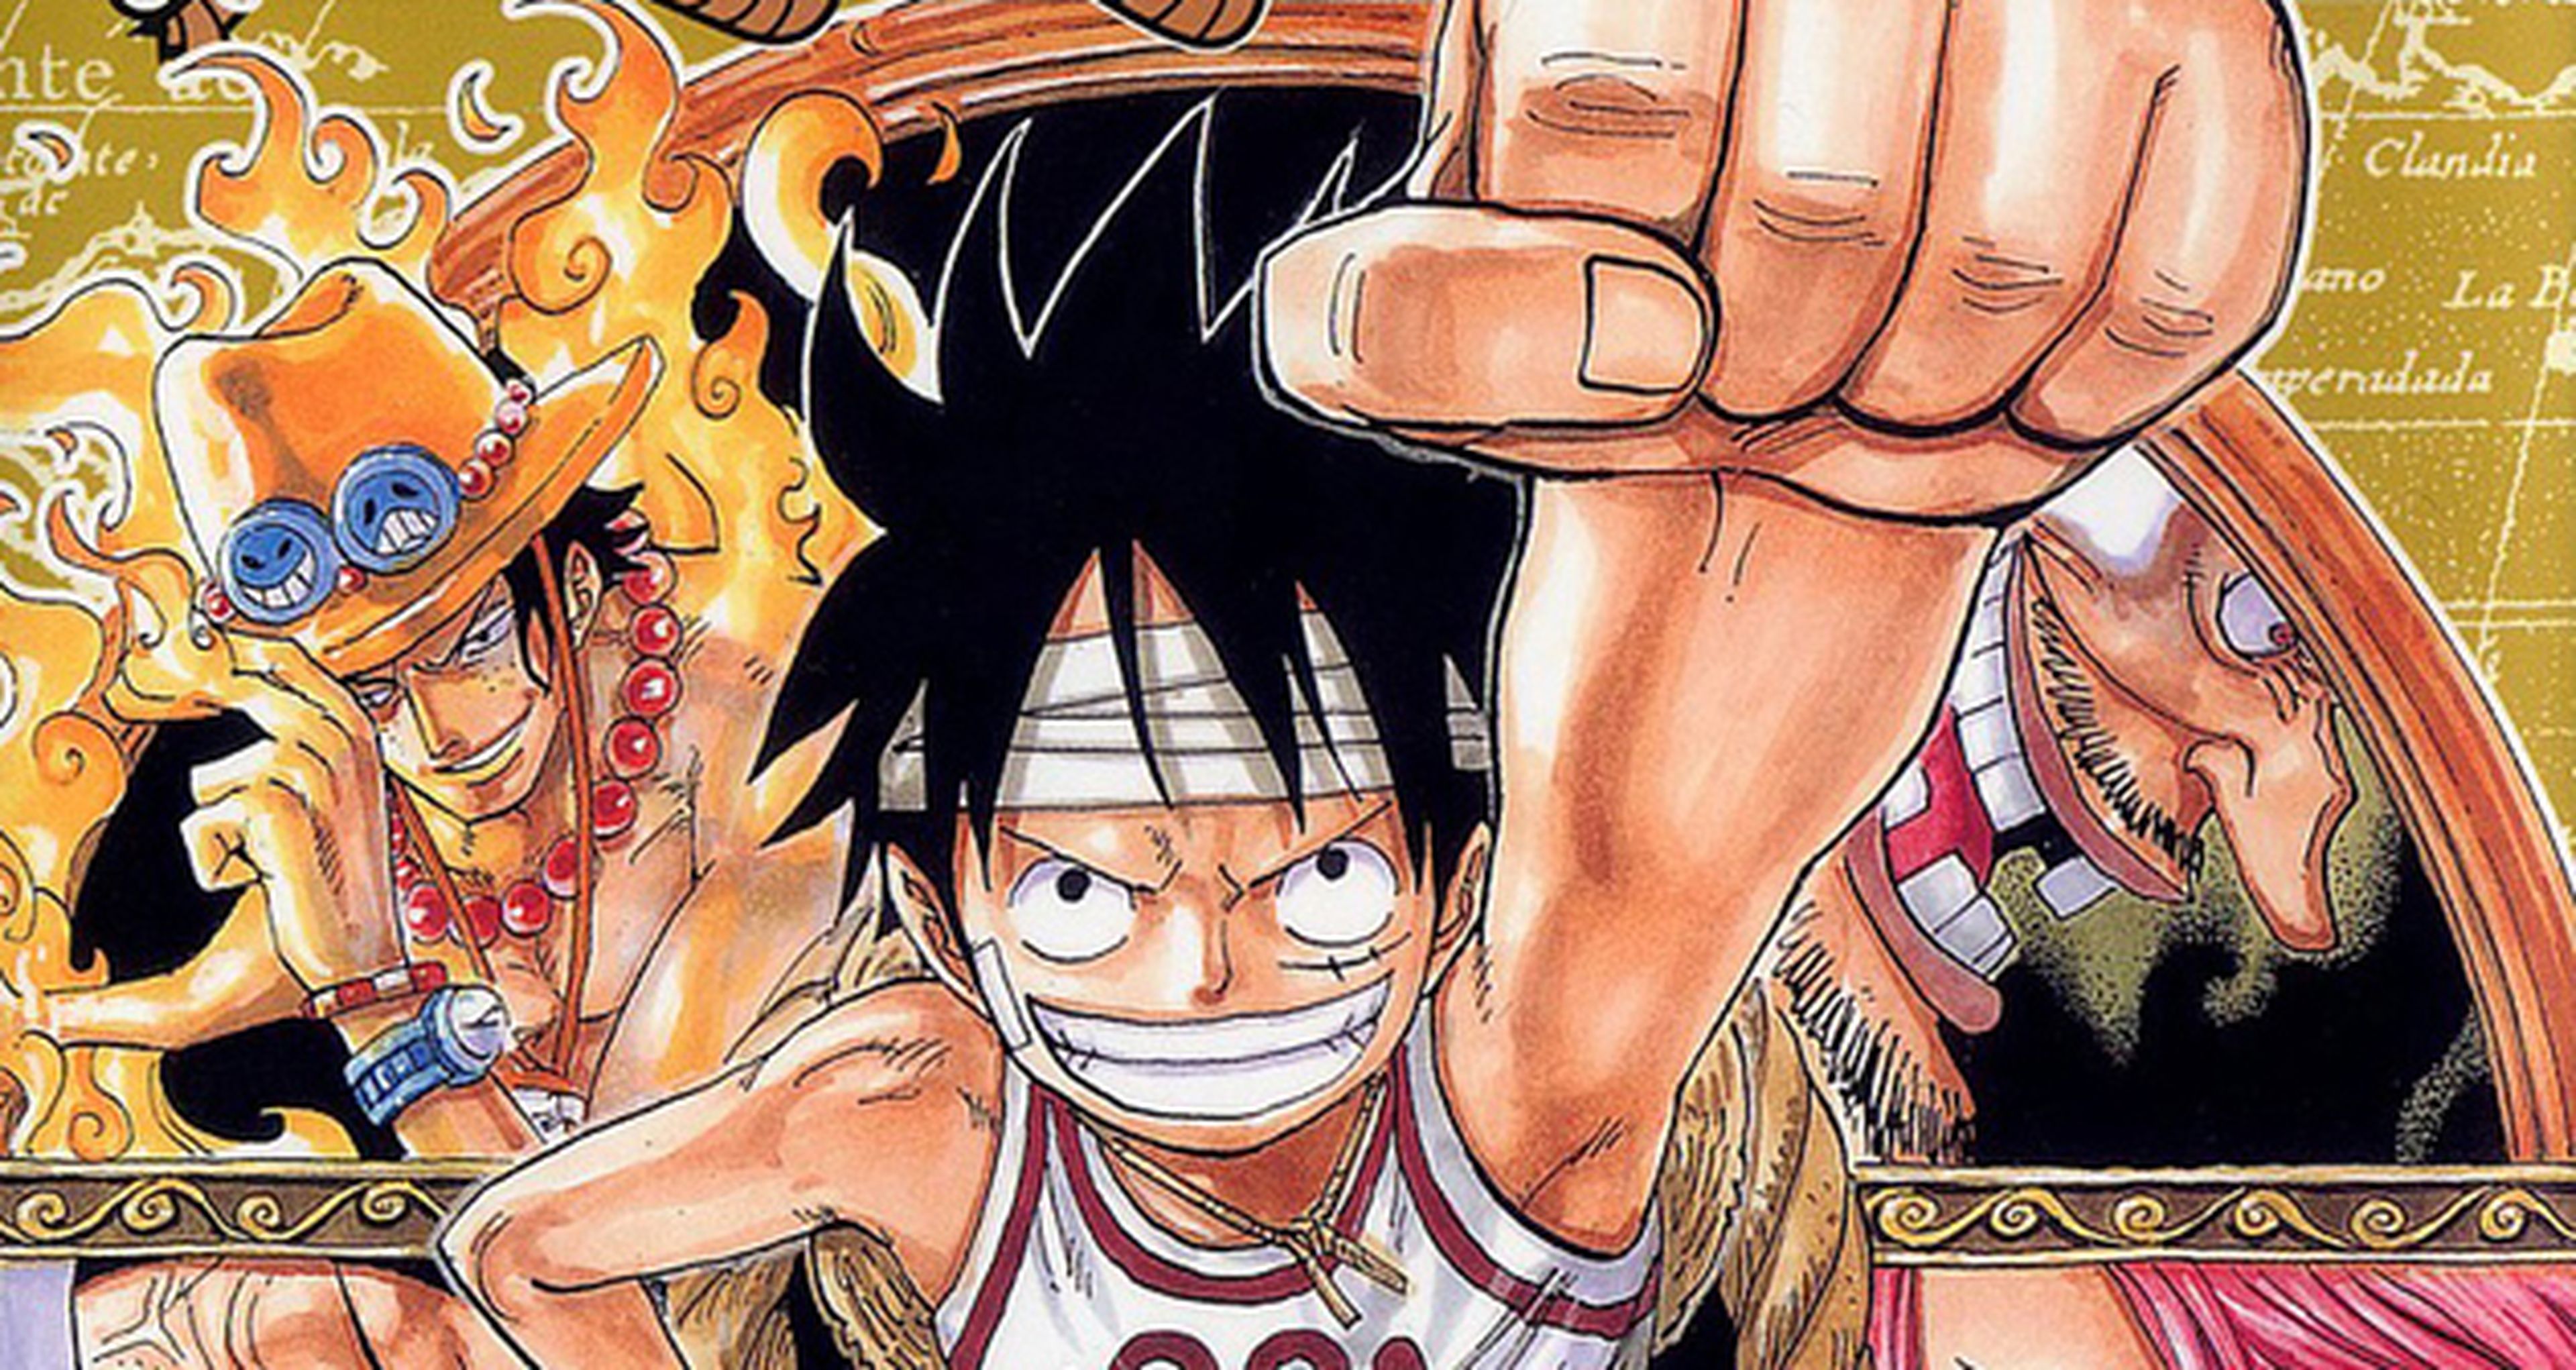 Eiichiro Oda (One Piece) revela el título del manga del que siente celos